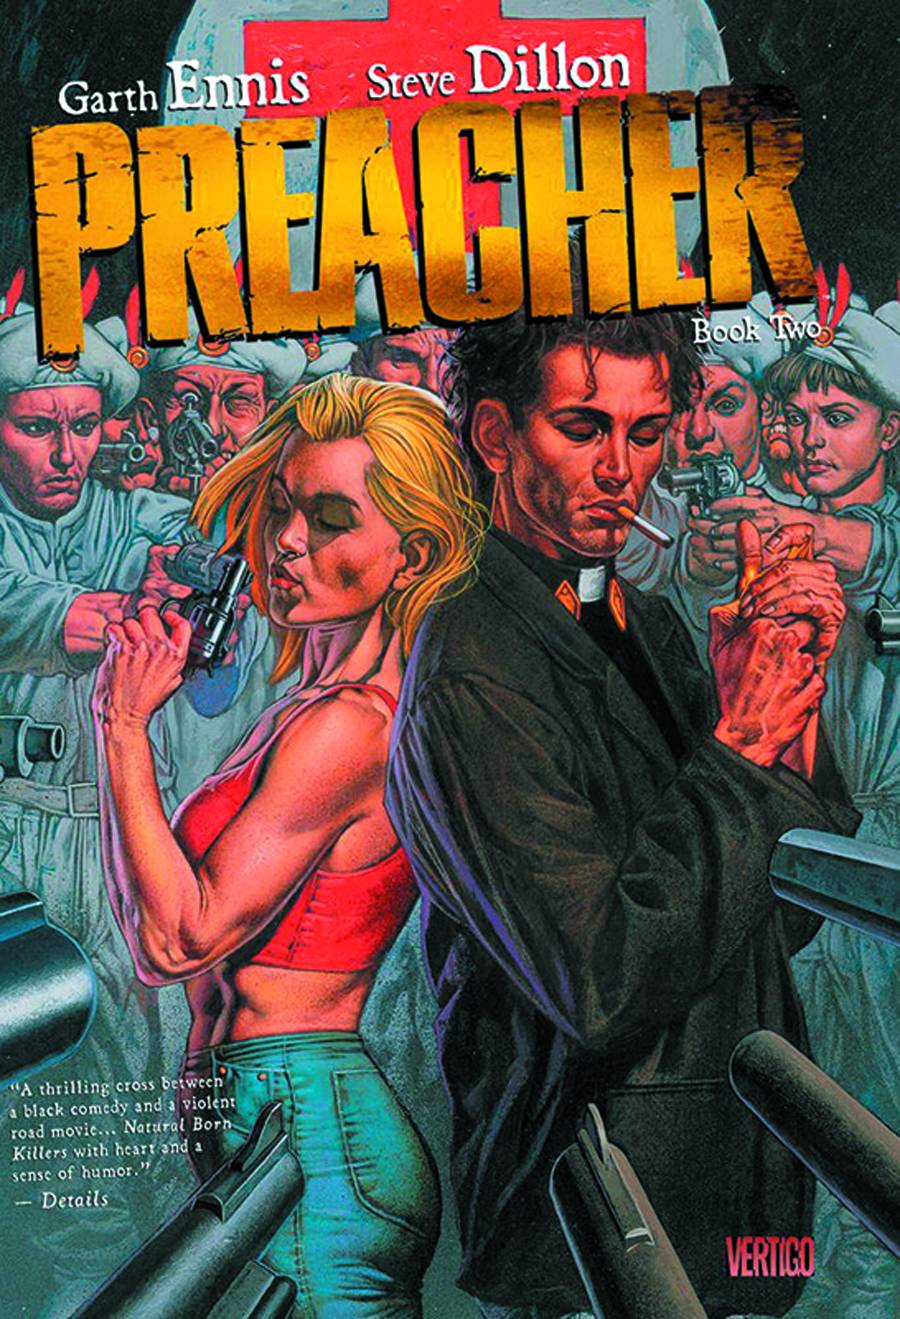 Preacher Graphic Novel Book 2